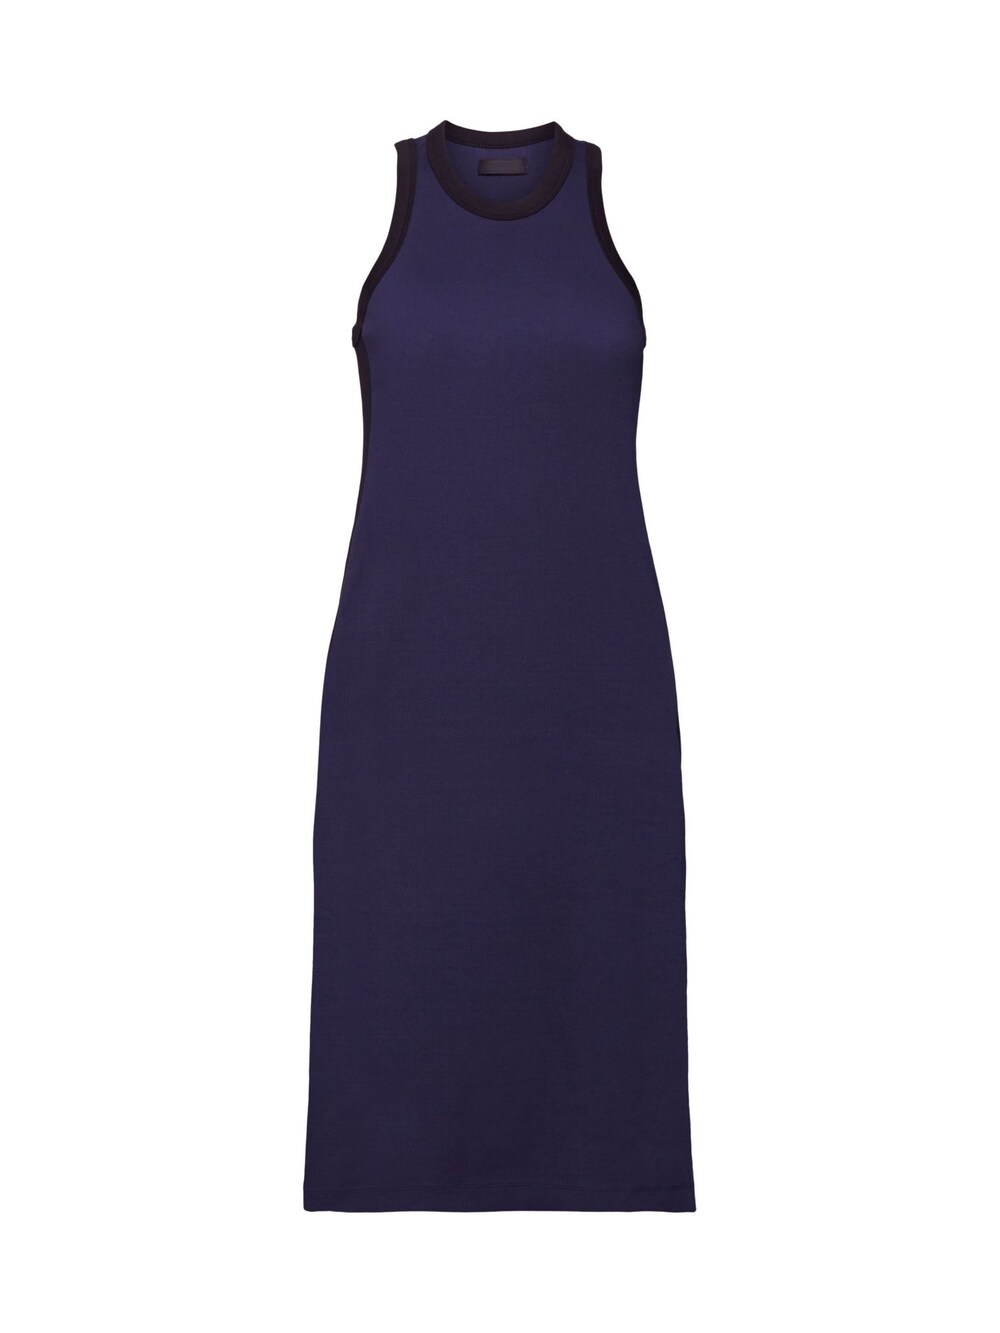 Вязанное платье Esprit, темно-синий вязанное платье esprit бензин